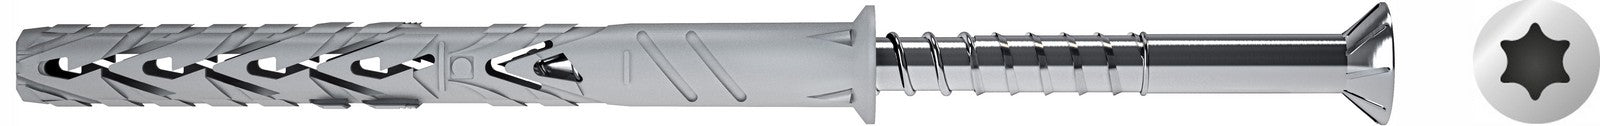 50pz elematic tassello t66v 10x160 con vite torx cod:ferx.97115